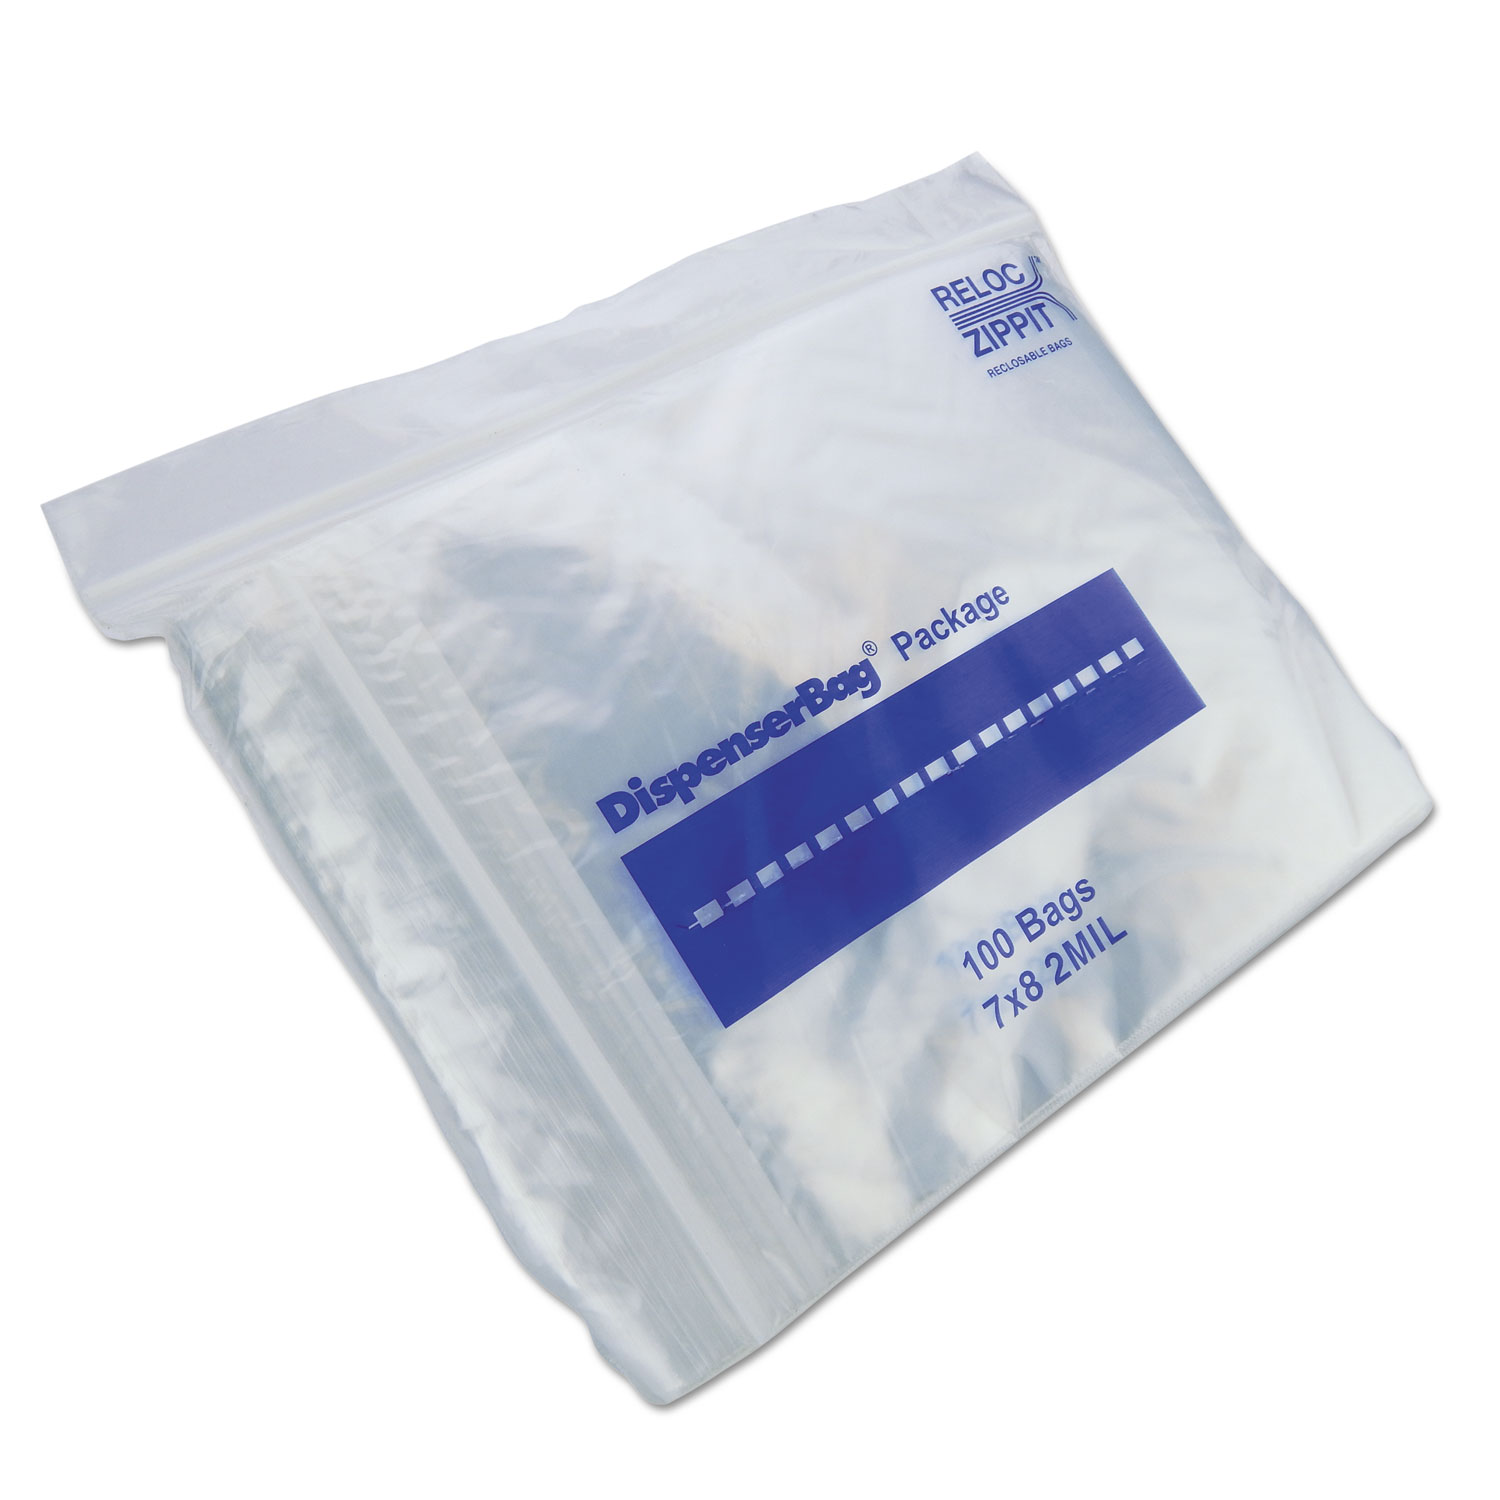  Duro Bag MGP MGZ2P0708 Plastic Zipper Bags, 2 mil, 7 x 8, Clear, 2,000/Carton (MGPMGZ2P0708) 